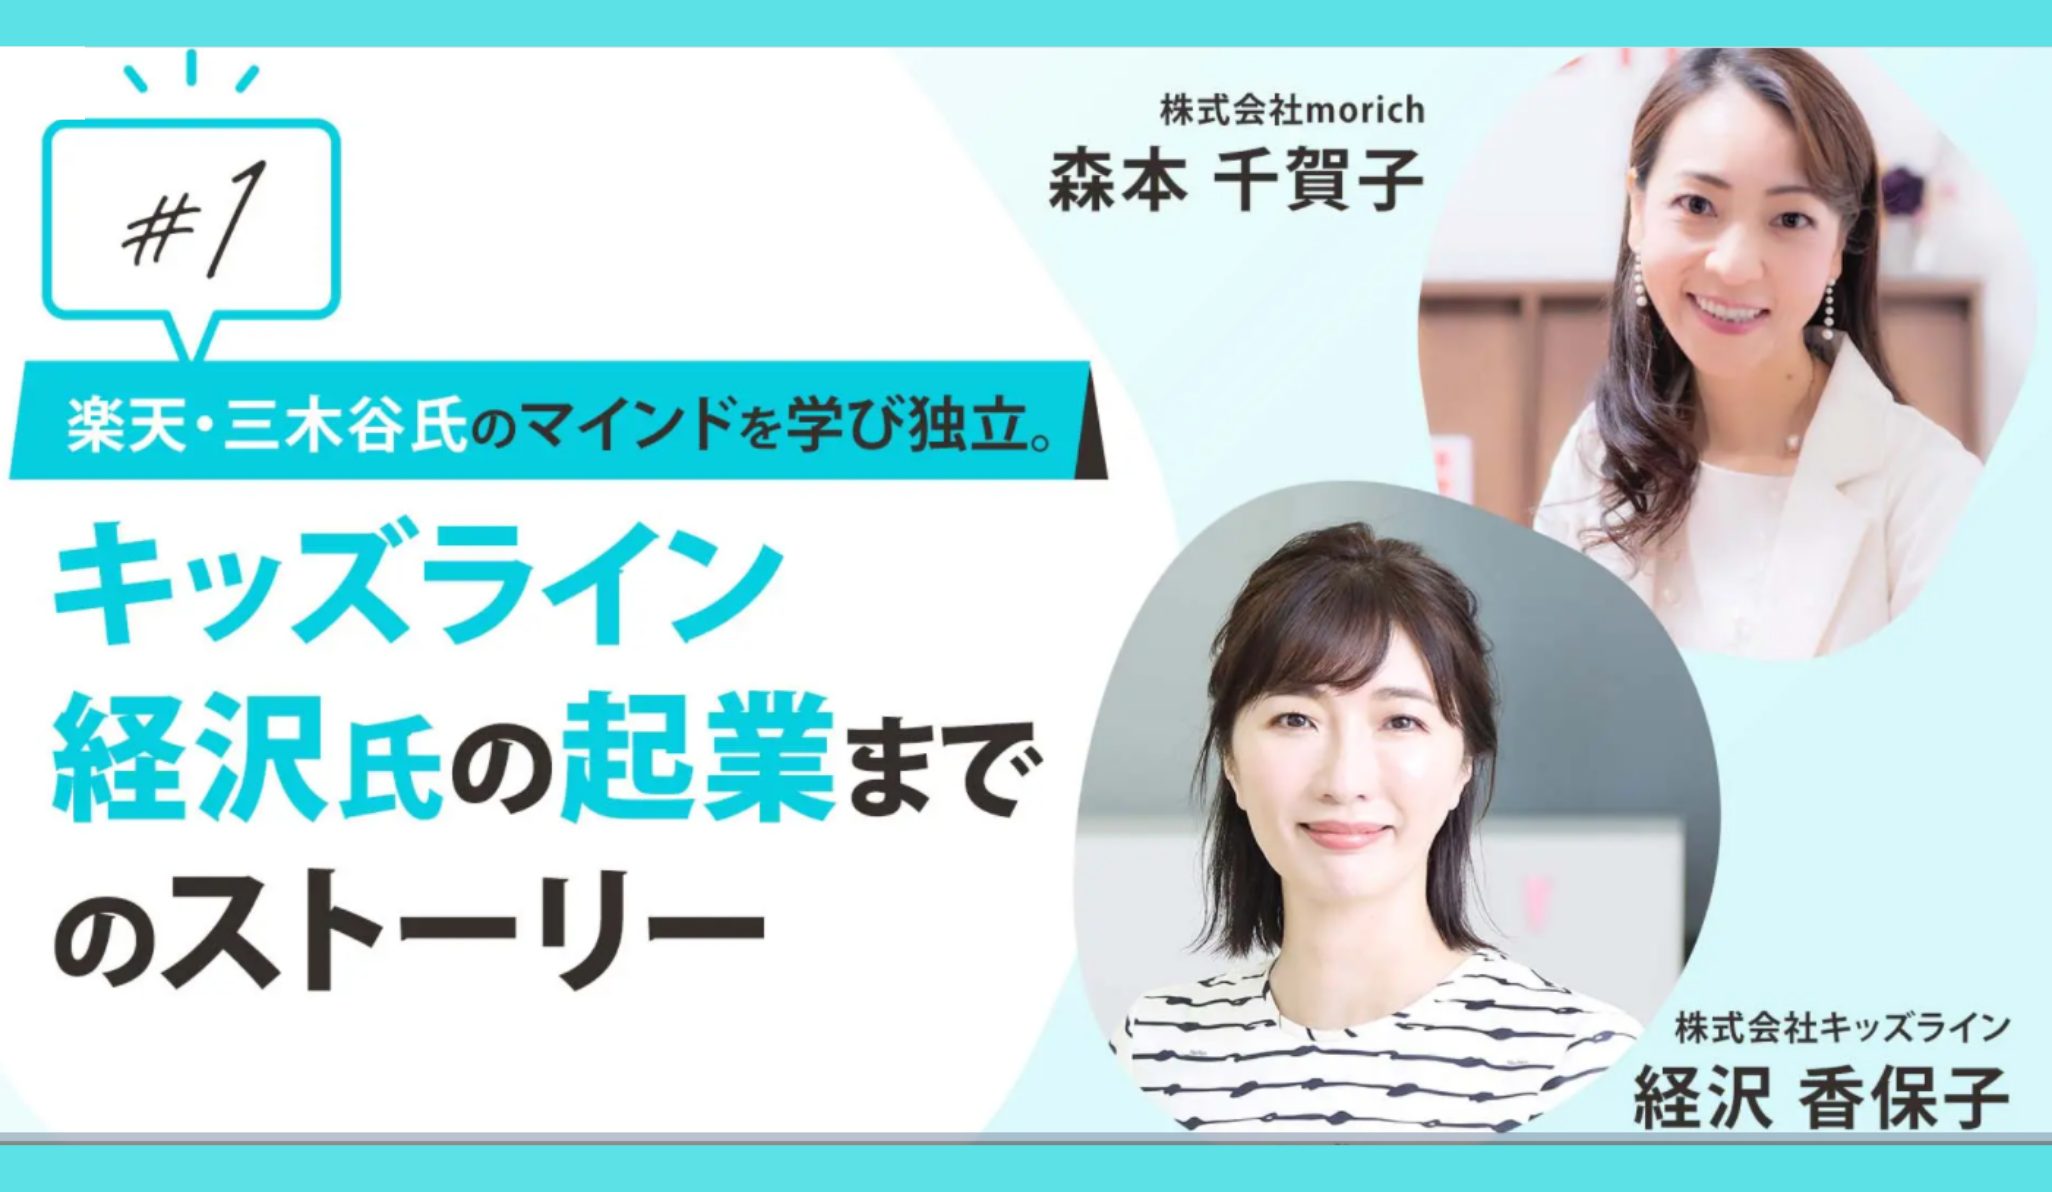 女性起業家の第一人者経沢 香保子さんへのインタビューという役得mission